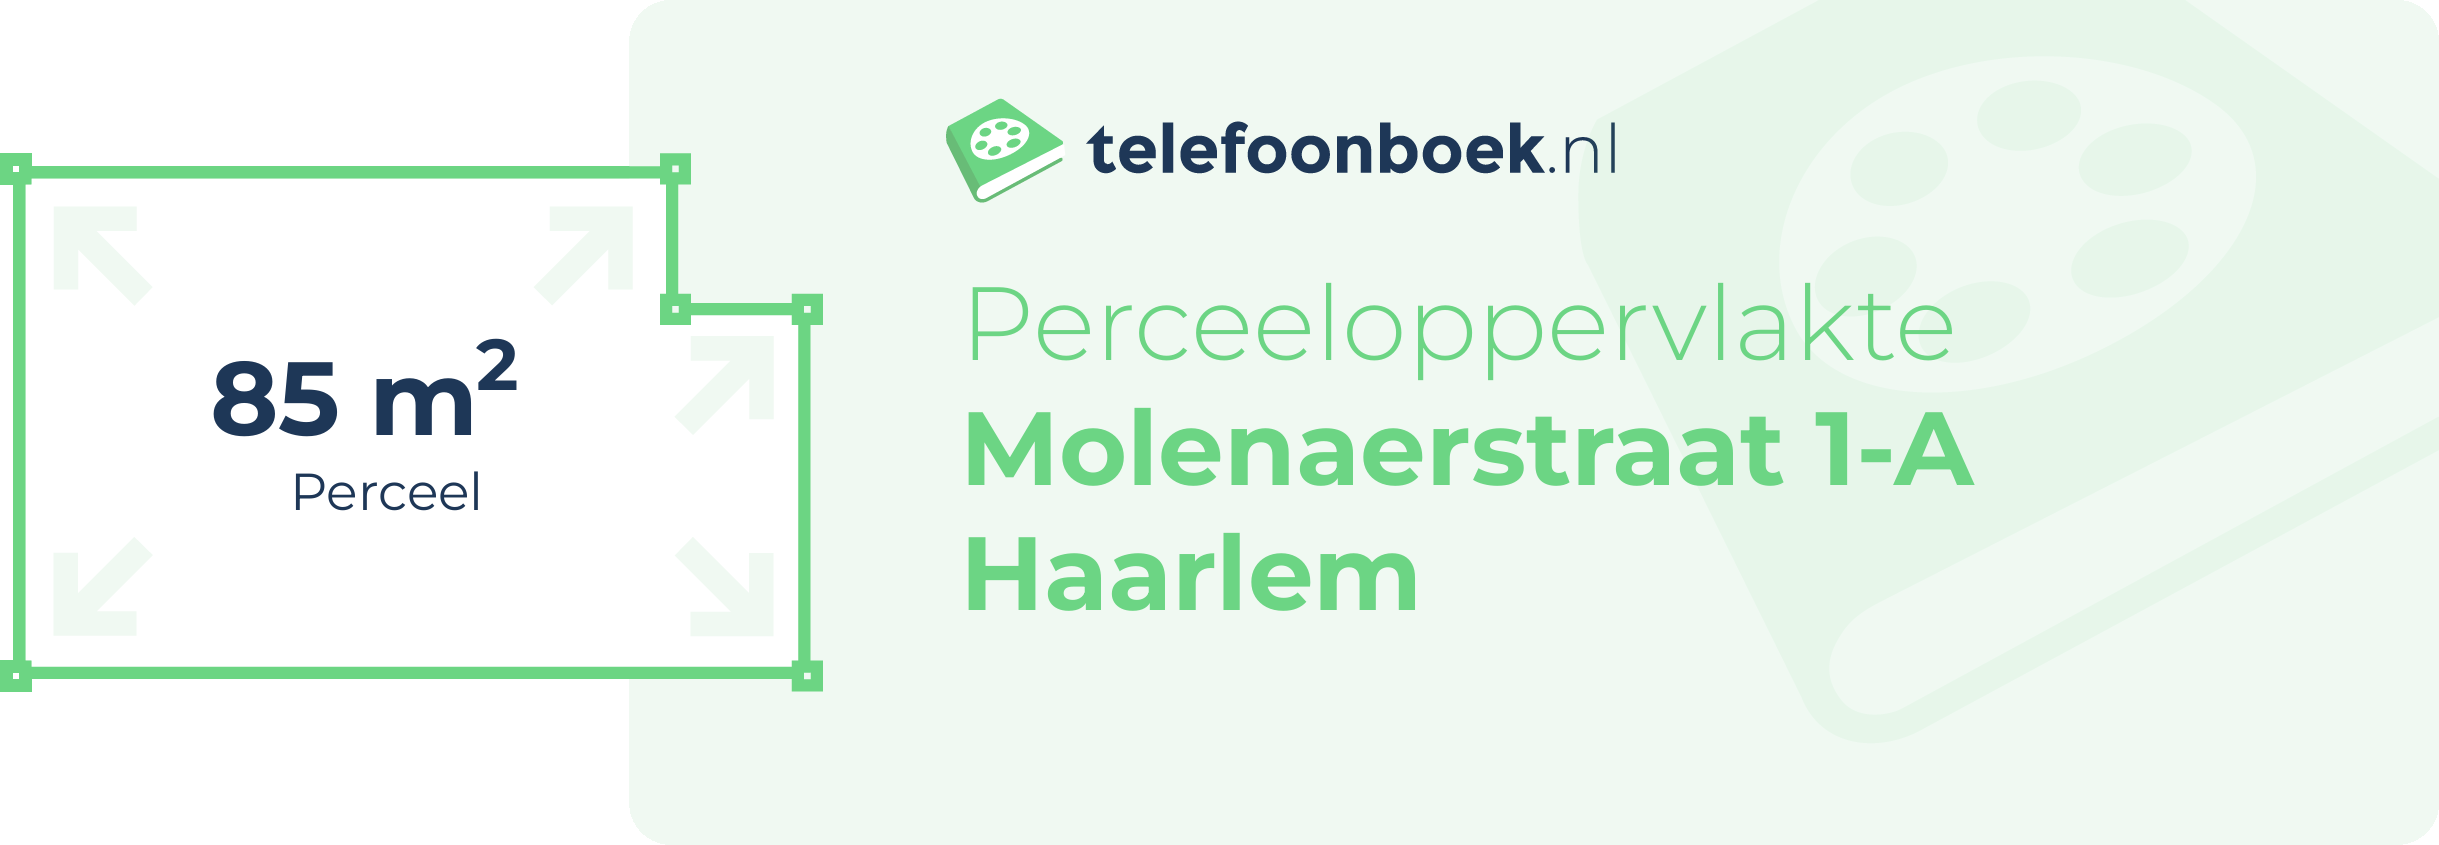 Perceeloppervlakte Molenaerstraat 1-A Haarlem